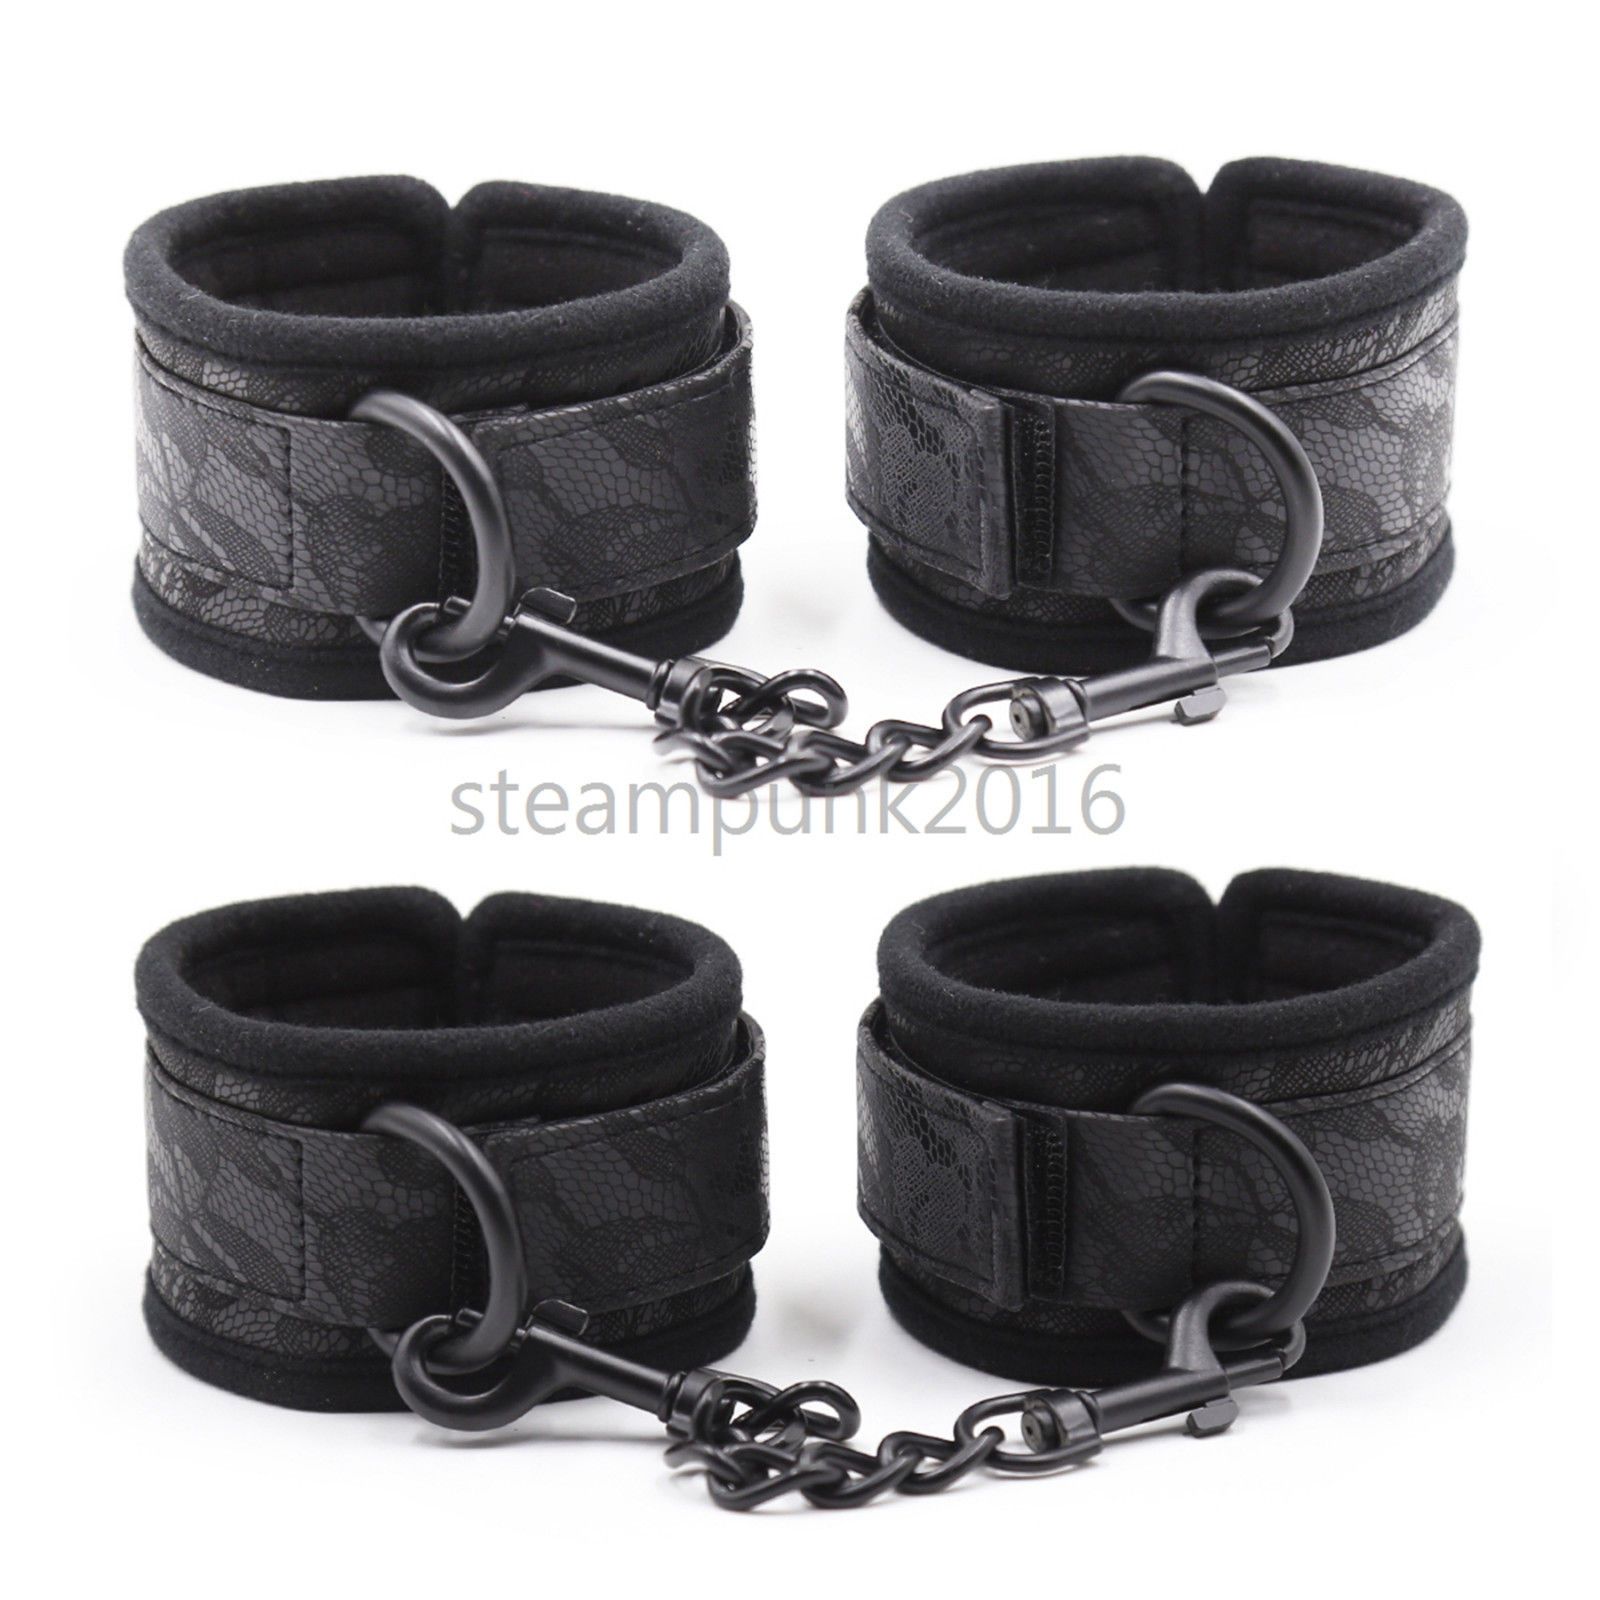 HandcuffsAnklecuffs